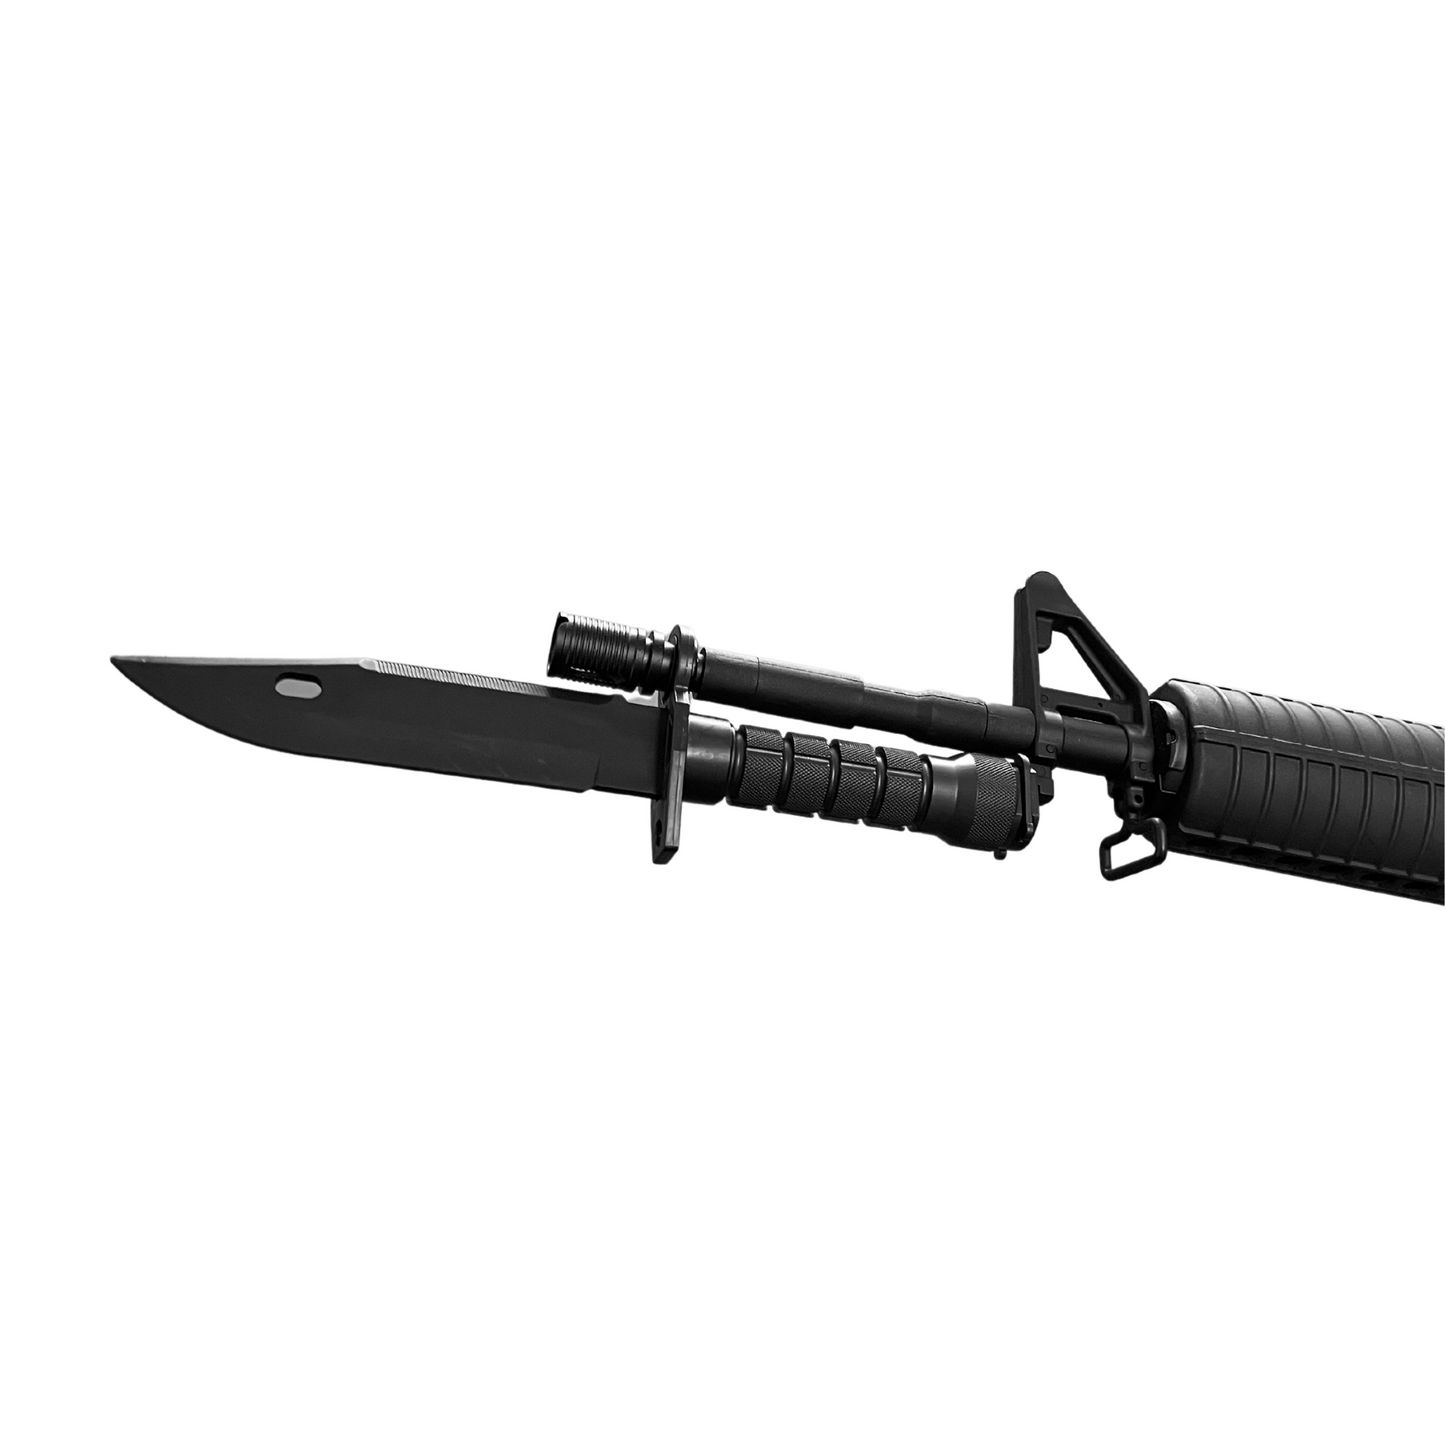 WASN M9 Melee Dagger/ Bayonet